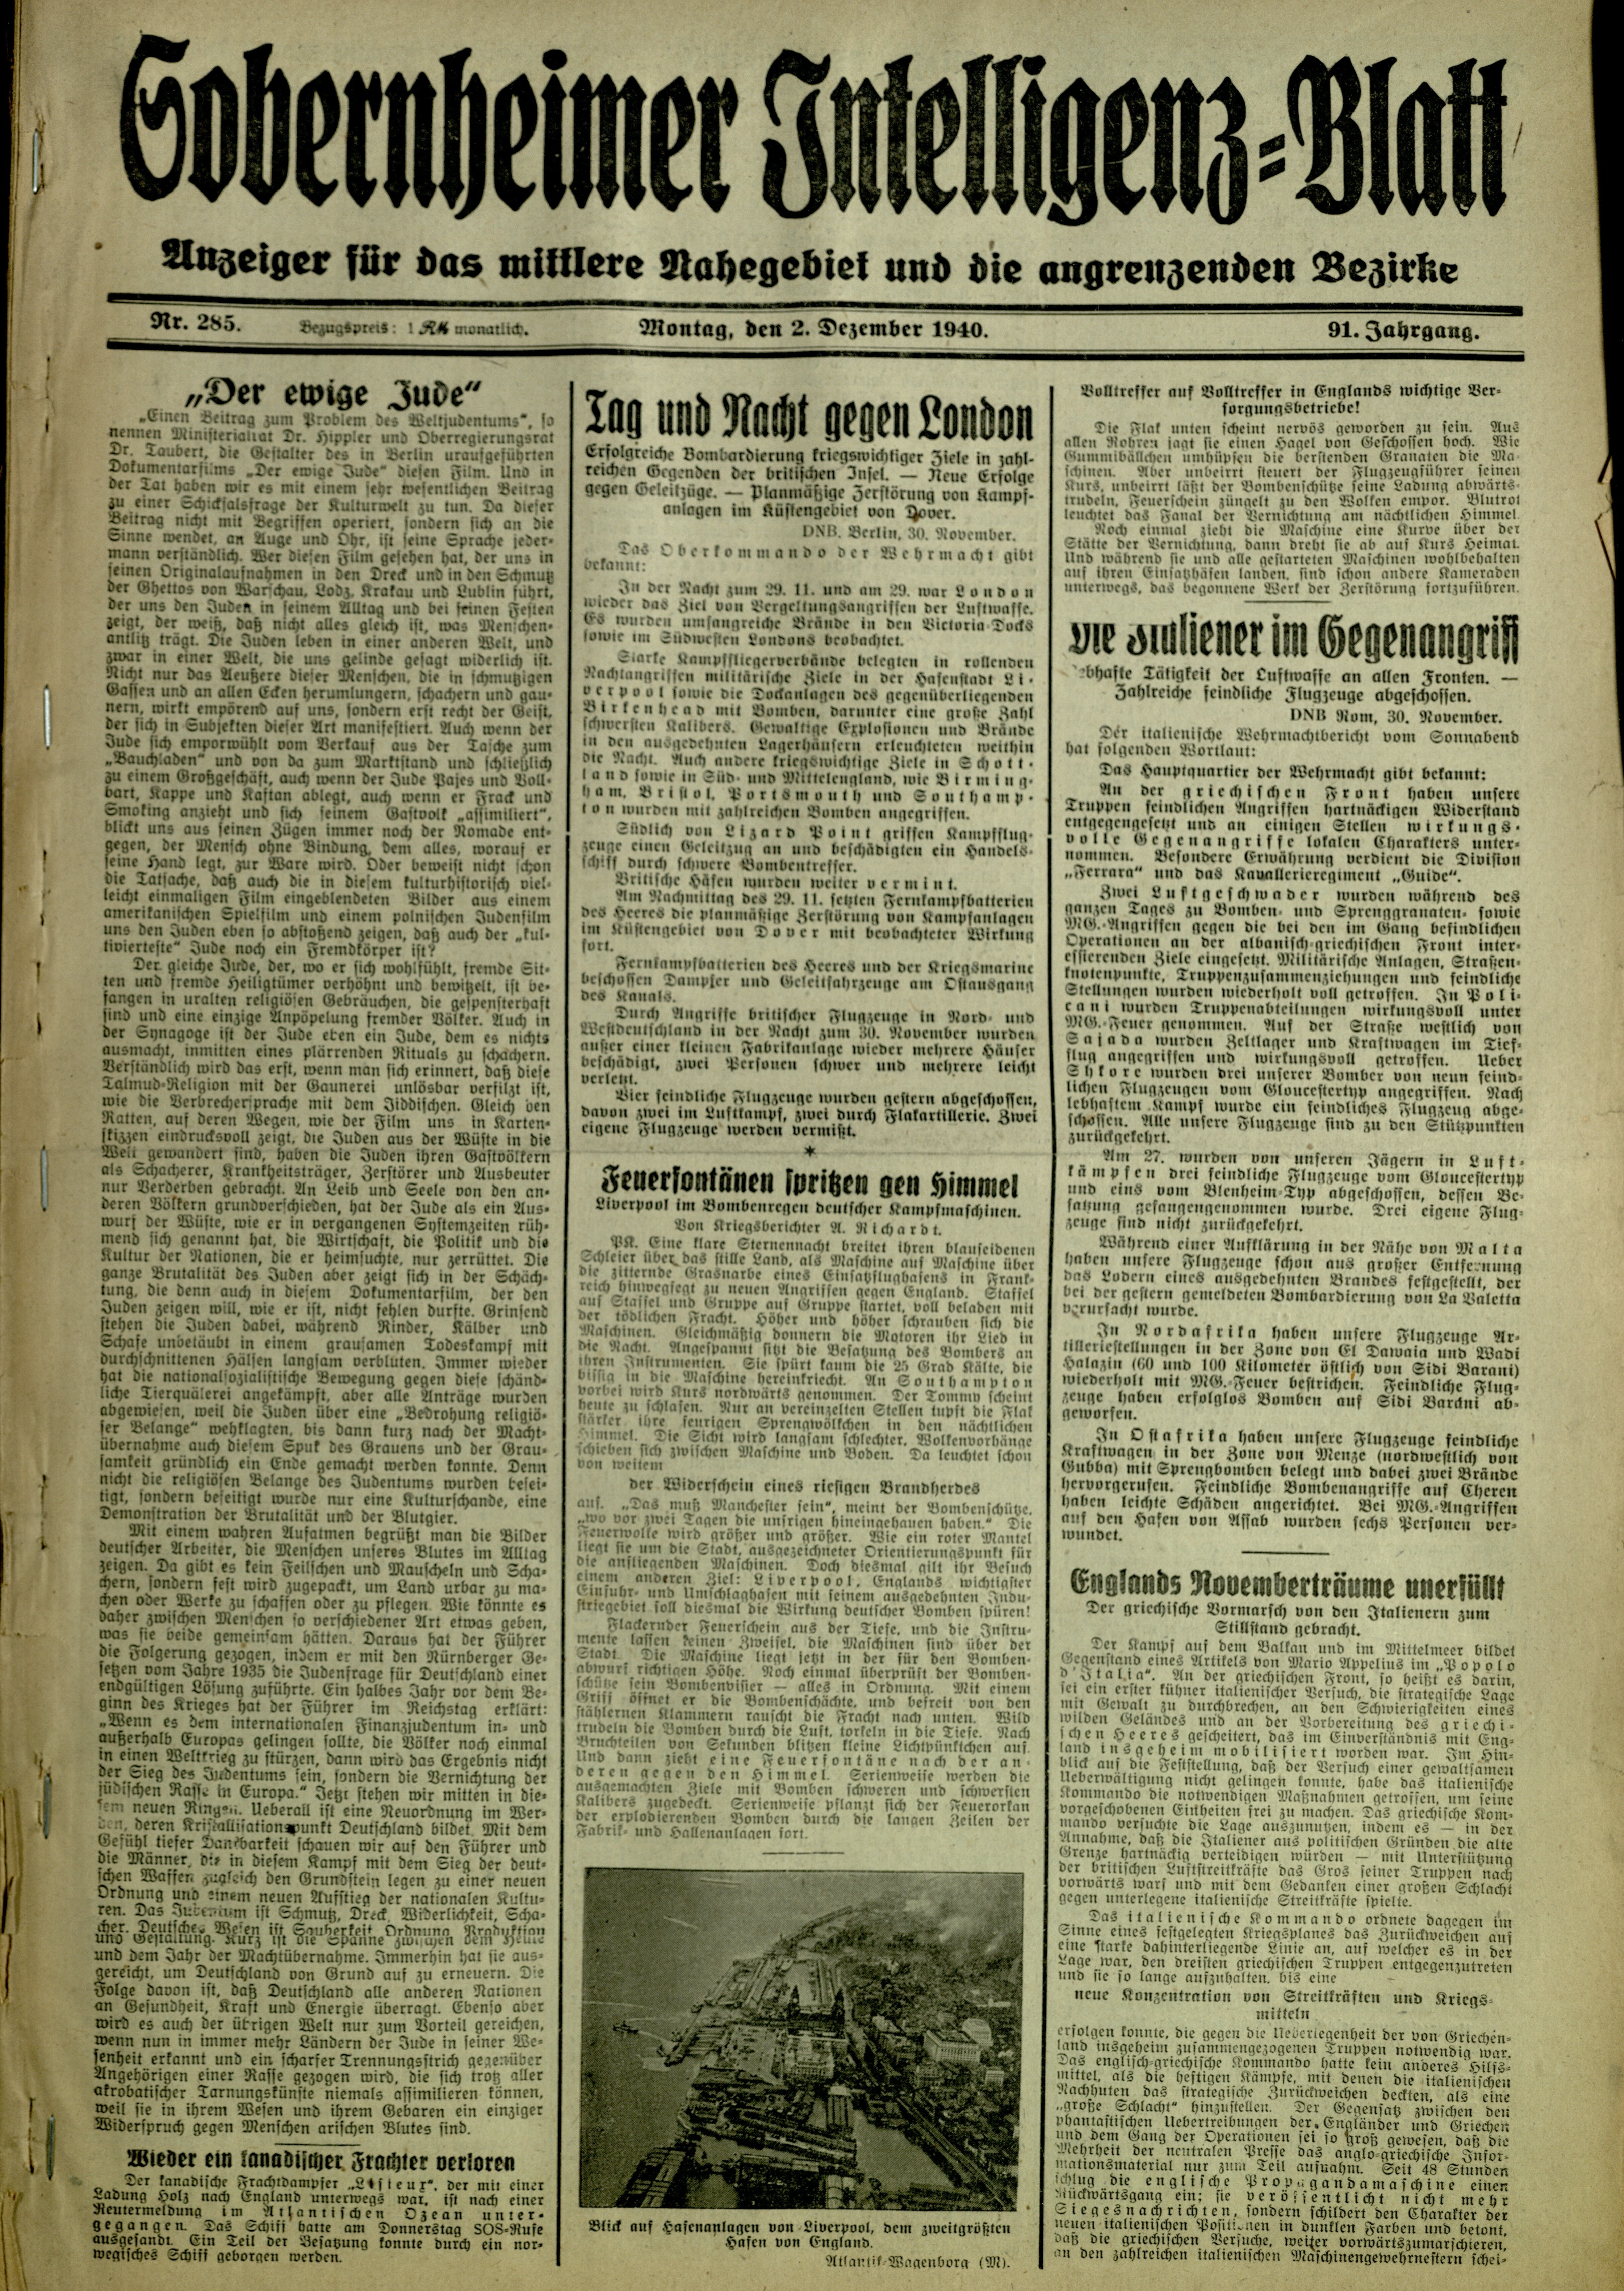 Zeitung: Sobernheimer Intelligenzblatt; Dezember 1940, Jg. 91 Nr. 245 (Heimatmuseum Bad Sobernheim CC BY-NC-SA)